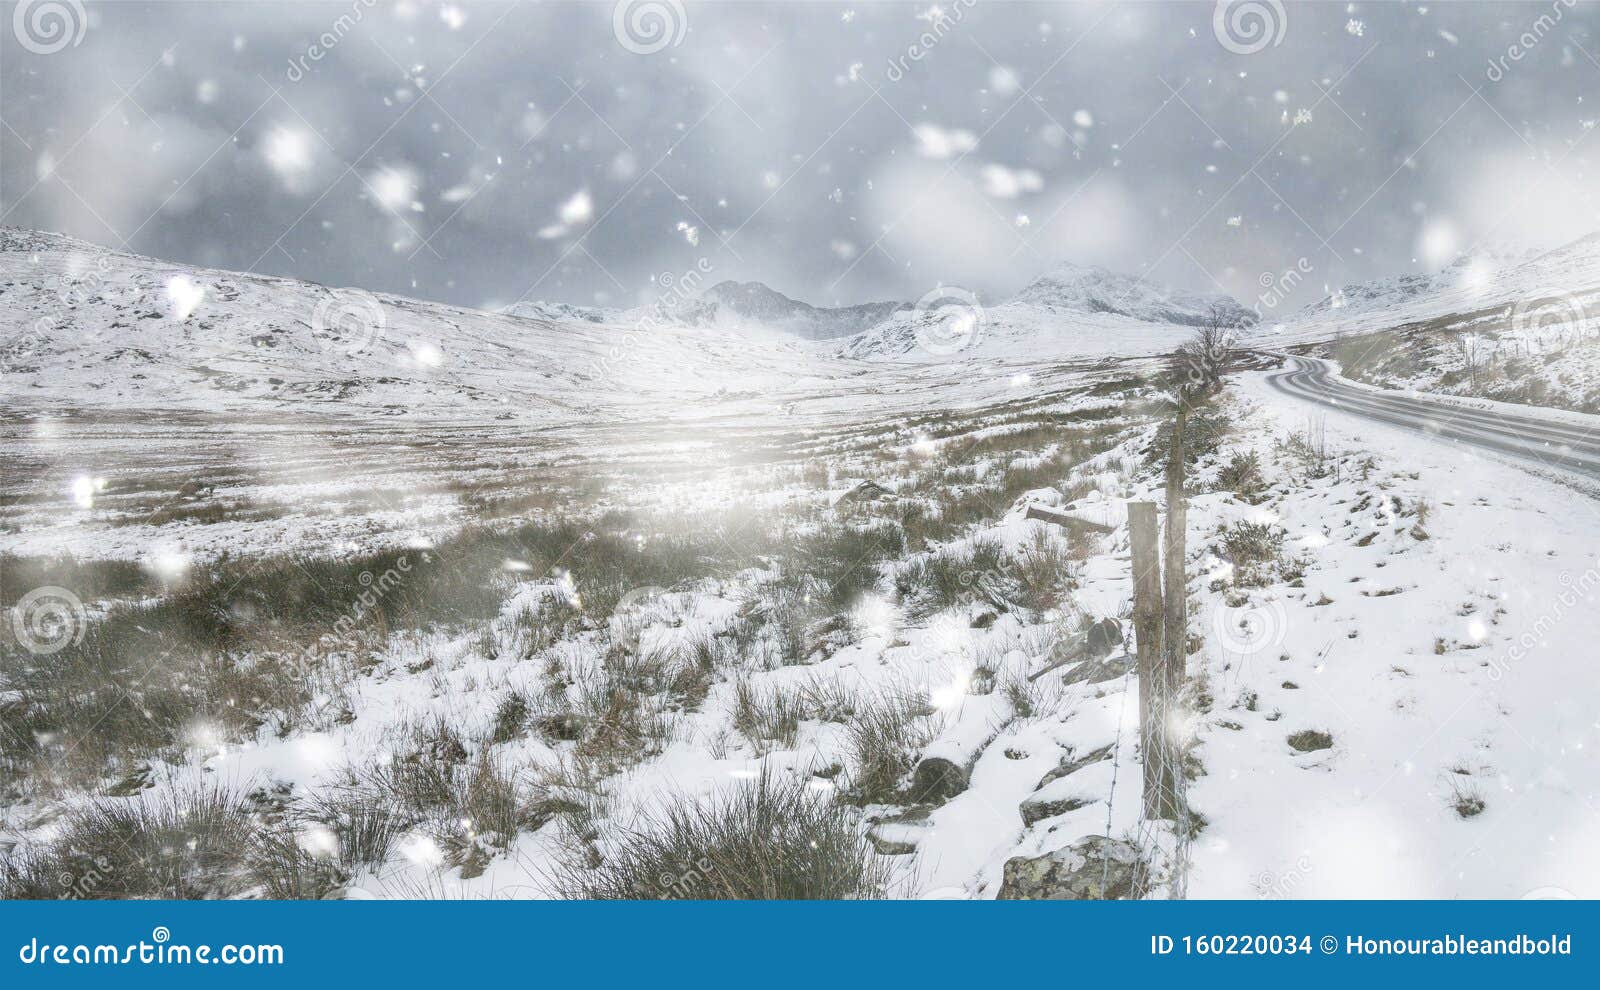 雪山背景中雪山在冬季雪多尼亚国家公园的美丽景观库存照片 图片包括有雪山背景中雪山在冬季雪多尼亚国家公园的美丽景观